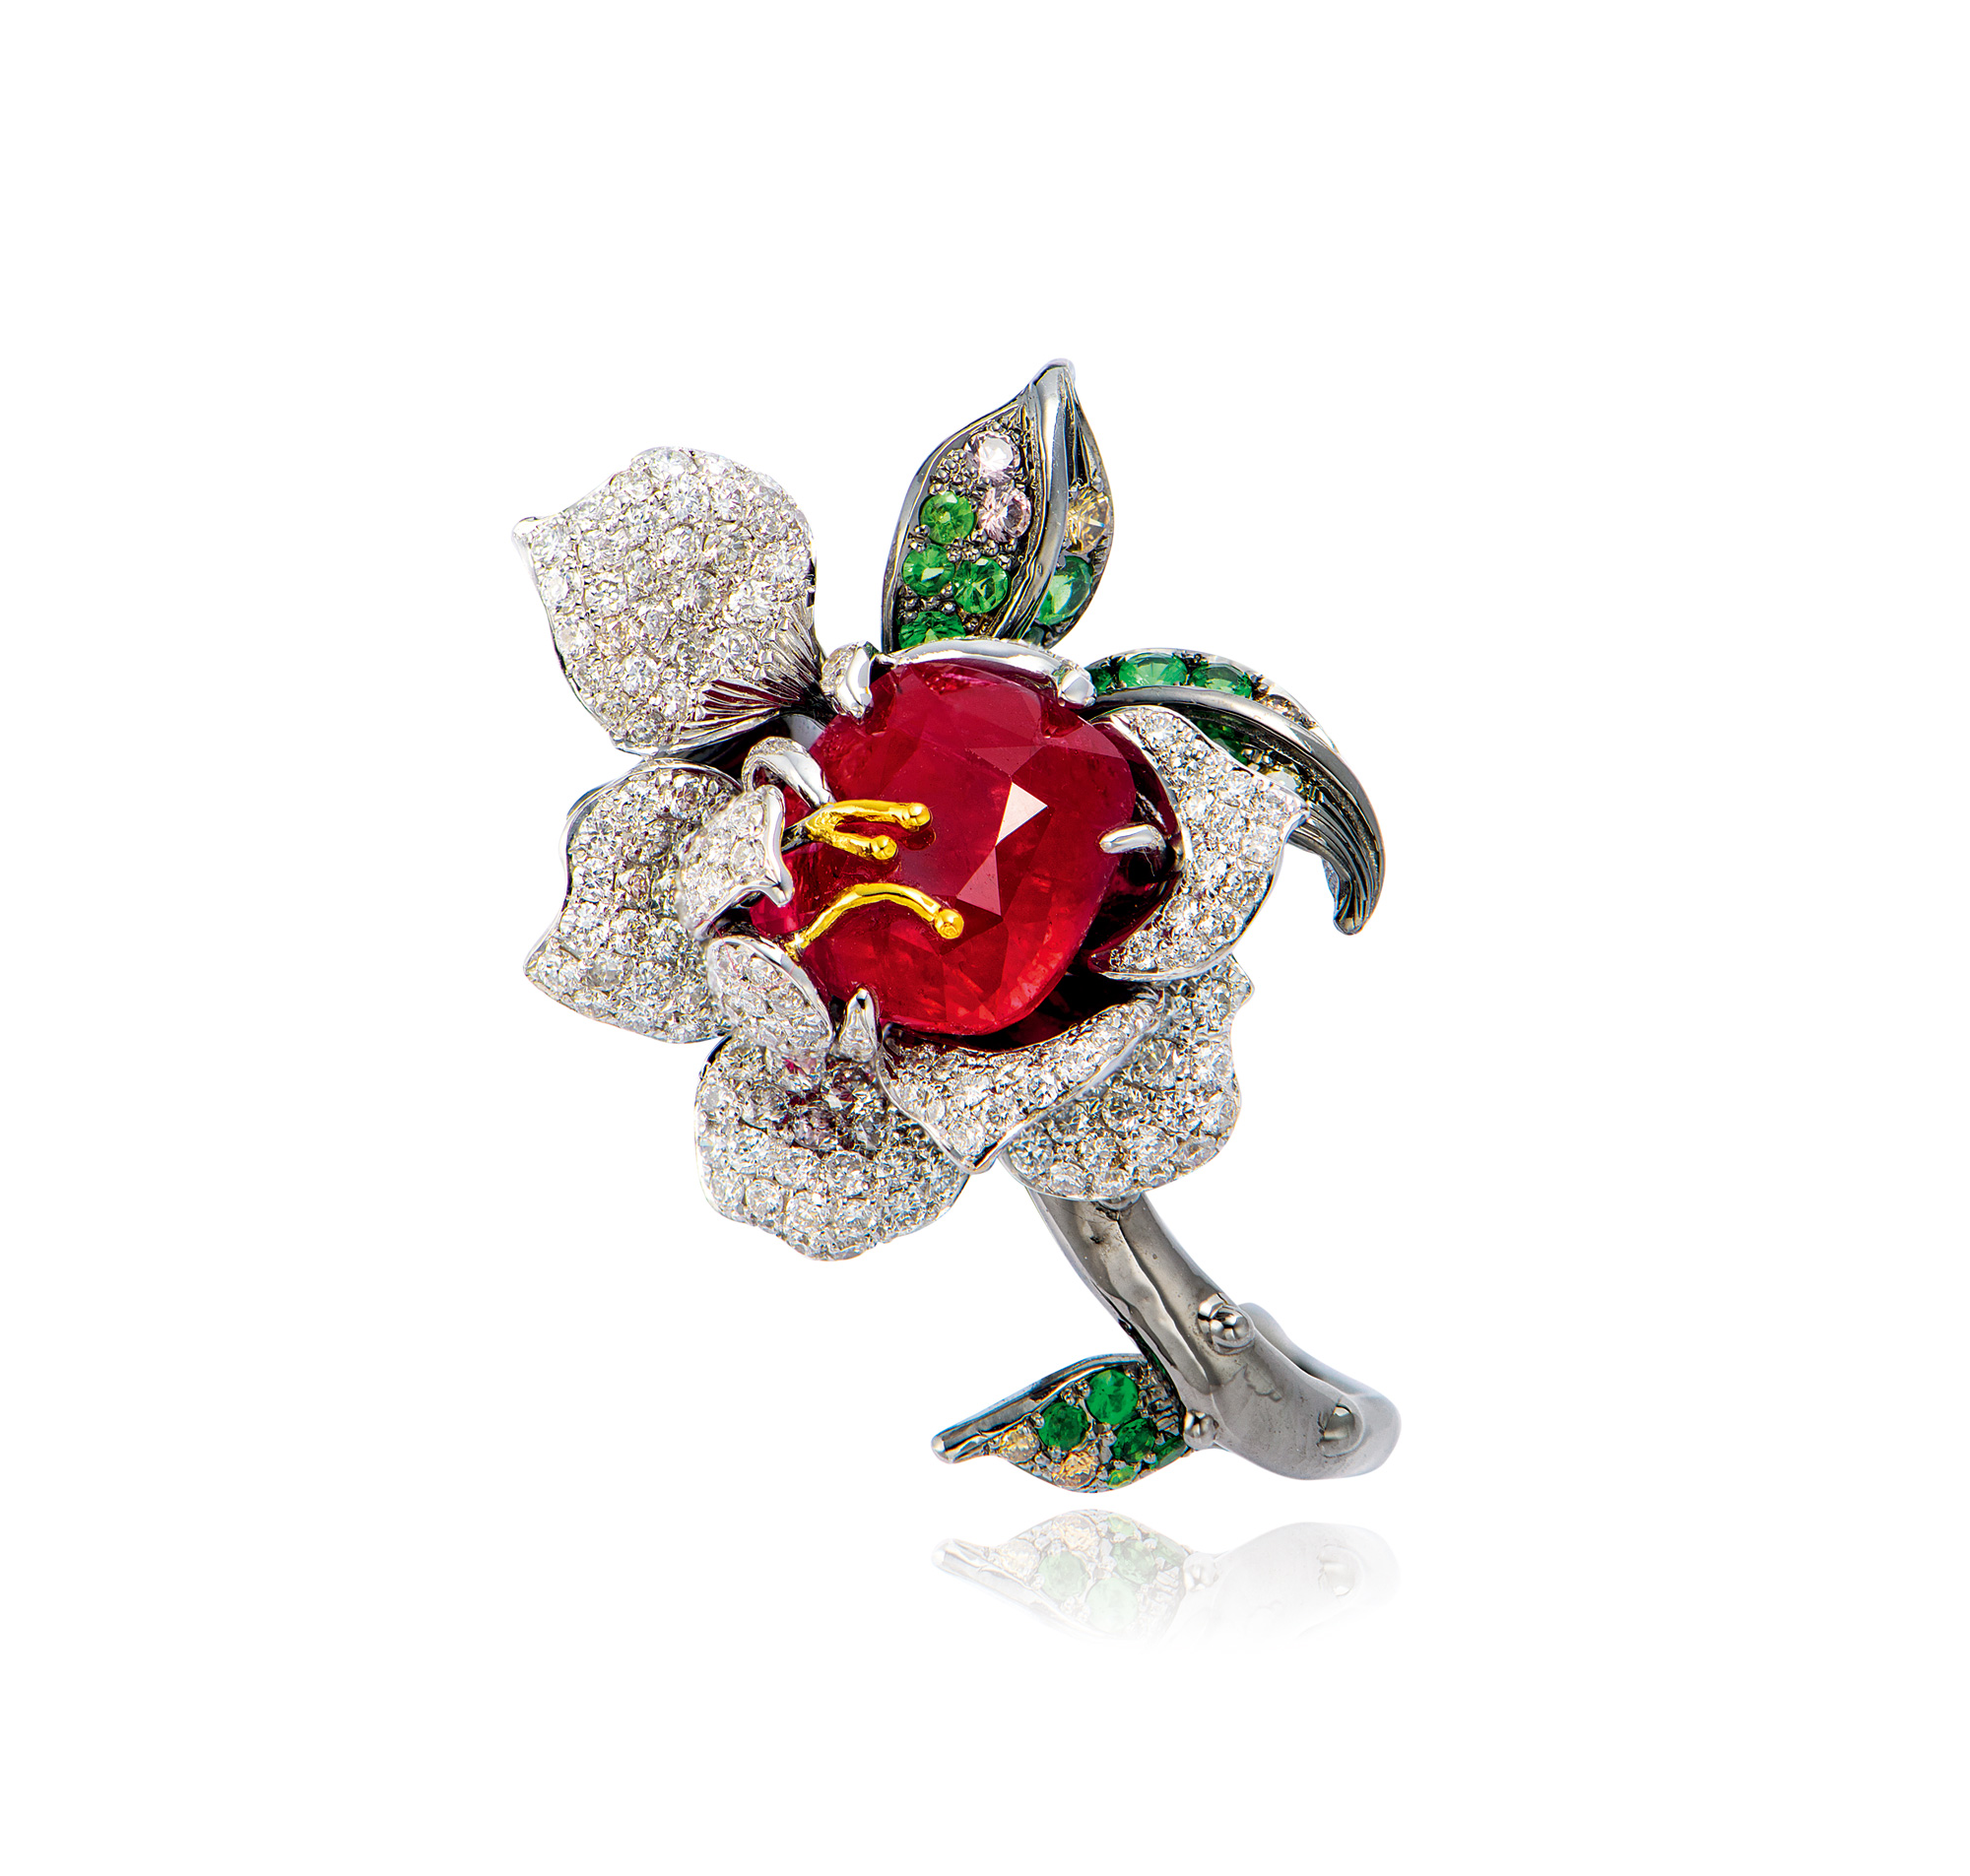 俄雅库特出产的钻石“玫瑰花魂”拍出2660万美元高价 - 2020年11月12日, 俄罗斯卫星通讯社